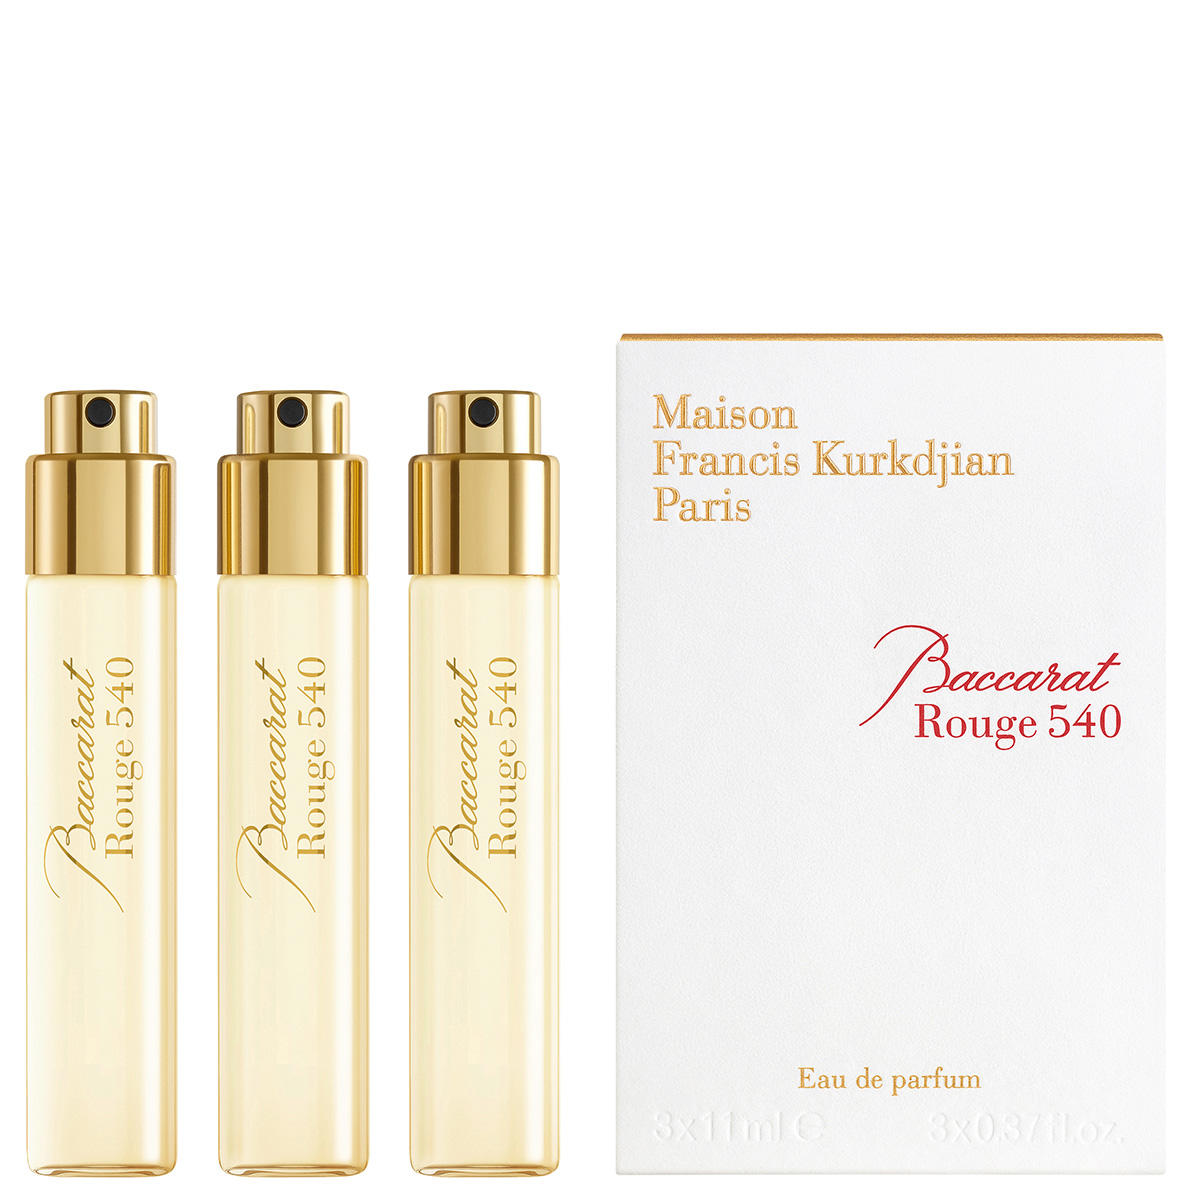 Maison Francis Kurkdjian Paris Baccarat Rouge 540 Eau de Parfum Refill Package with 3 x 11 ml - 2